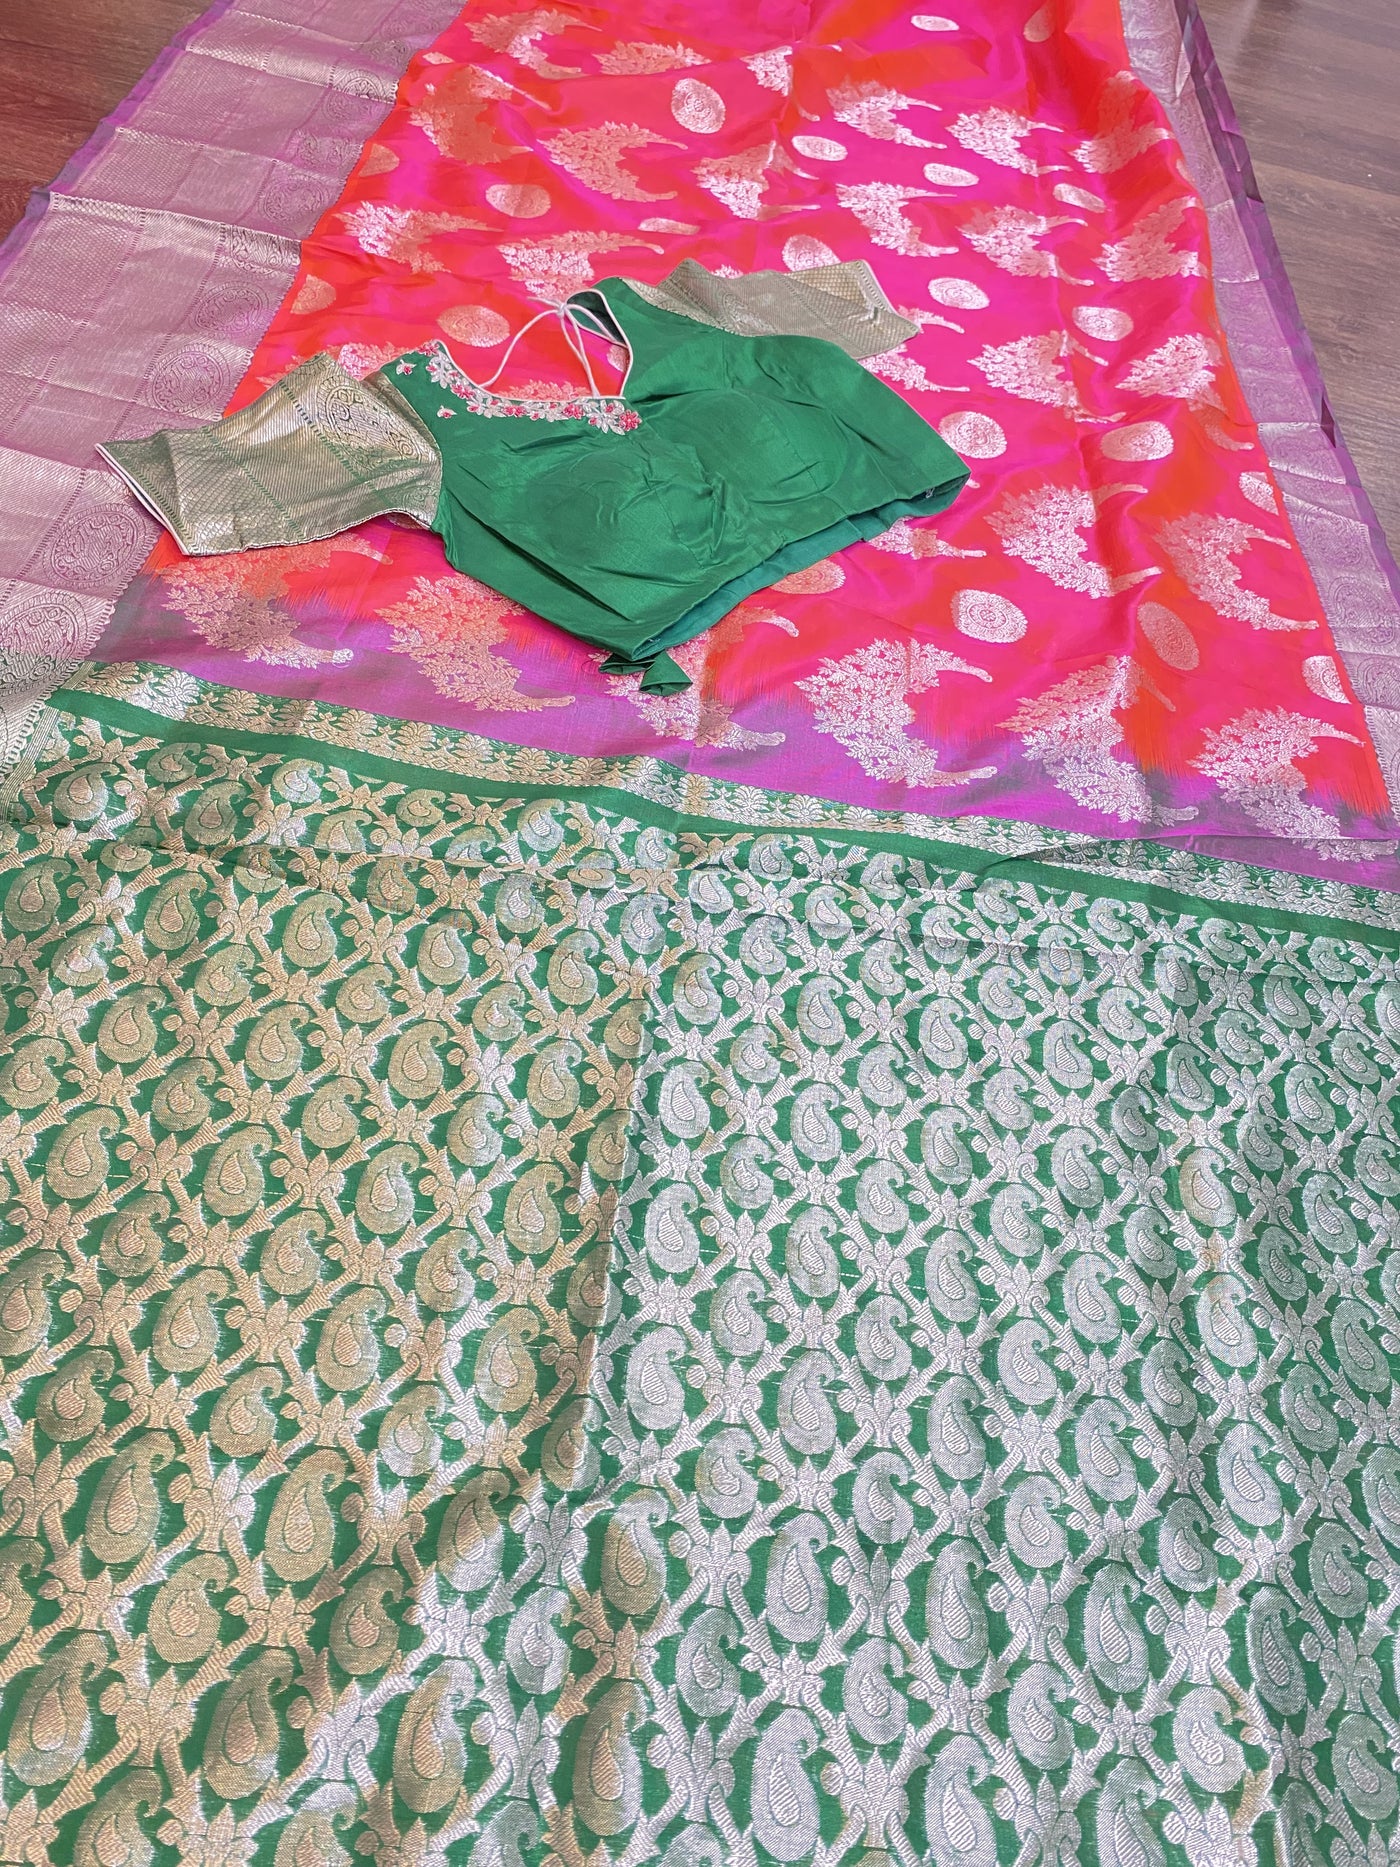 Pink/Orange and Green Venkatagiri Pattu Saree - Sakkhi Style